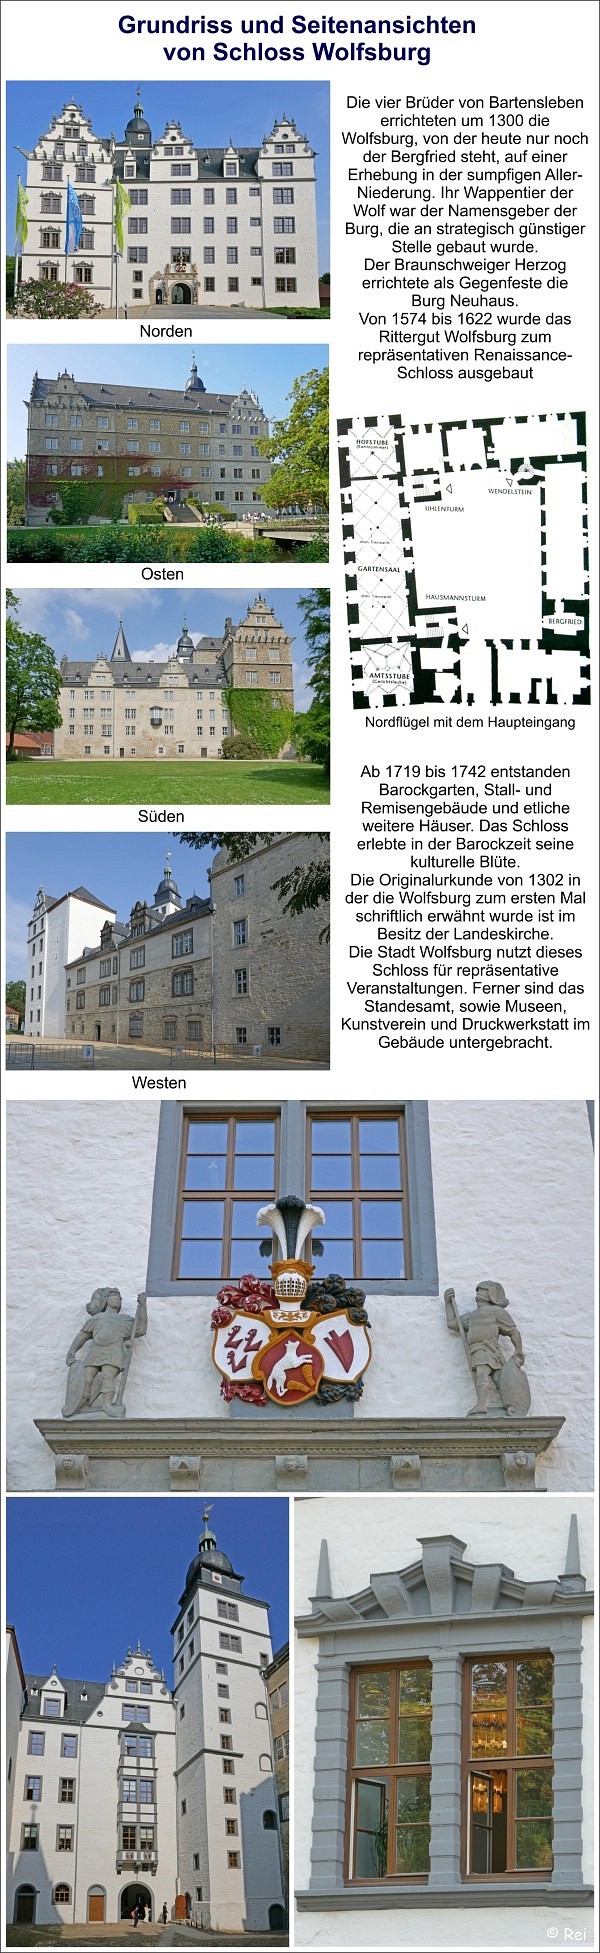 Grundriss und Seitenansichten von Schloss Wolfsburg